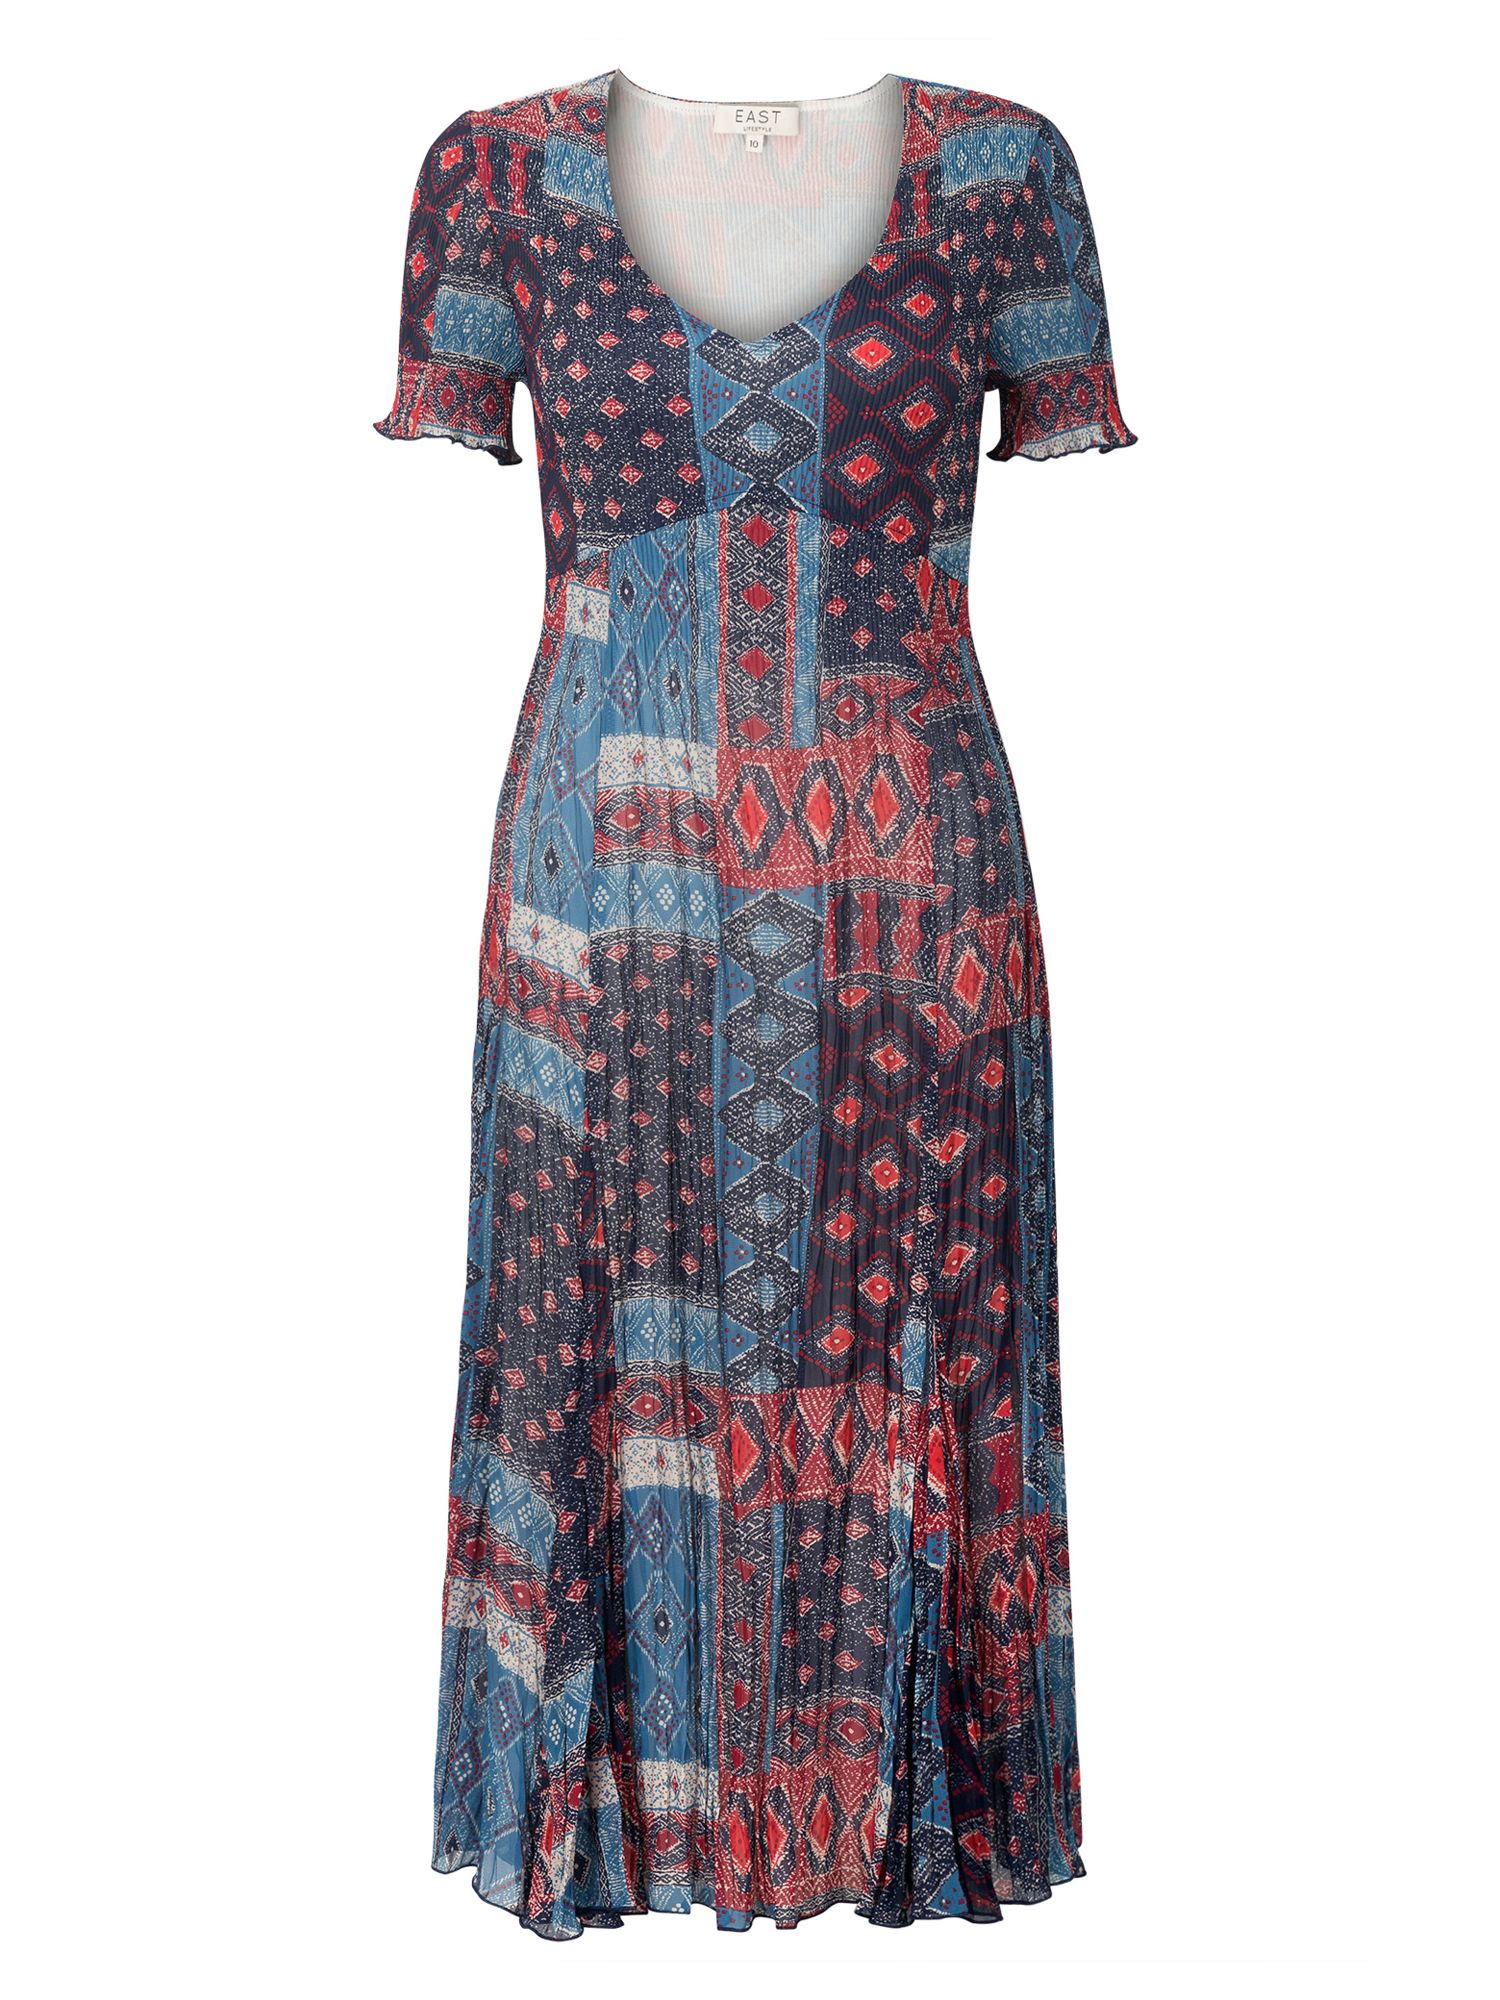 East River Lombok Print Dress, Multi